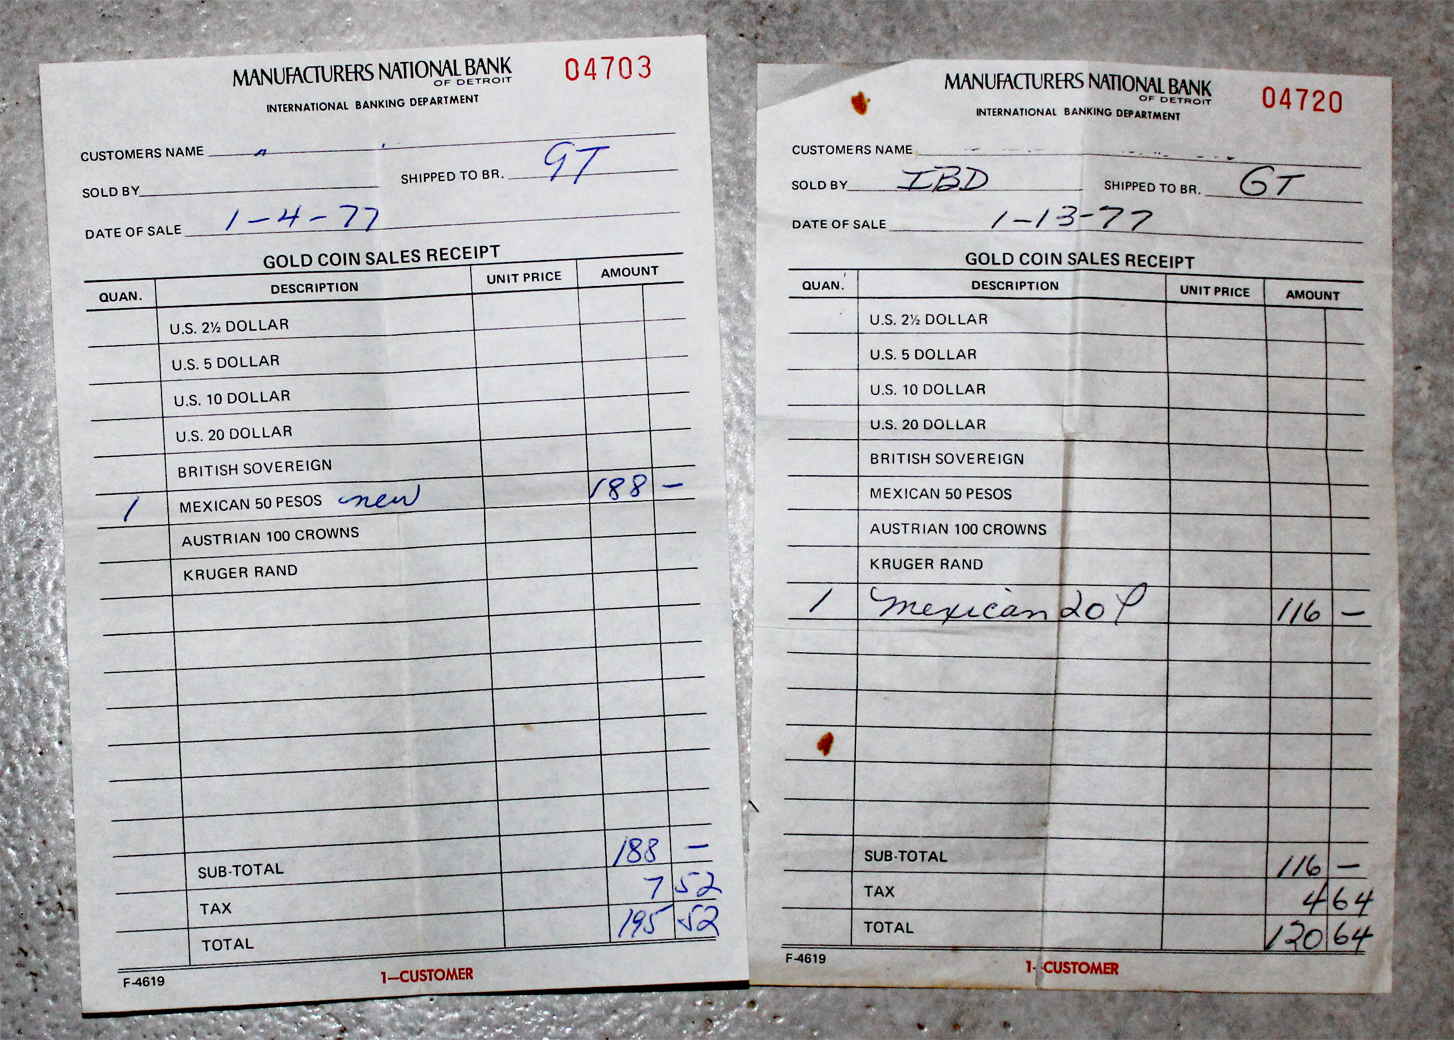 D-Camera gold coin sales receipts, manufacturer's bank detroit, 1977 2-15-22.jpg